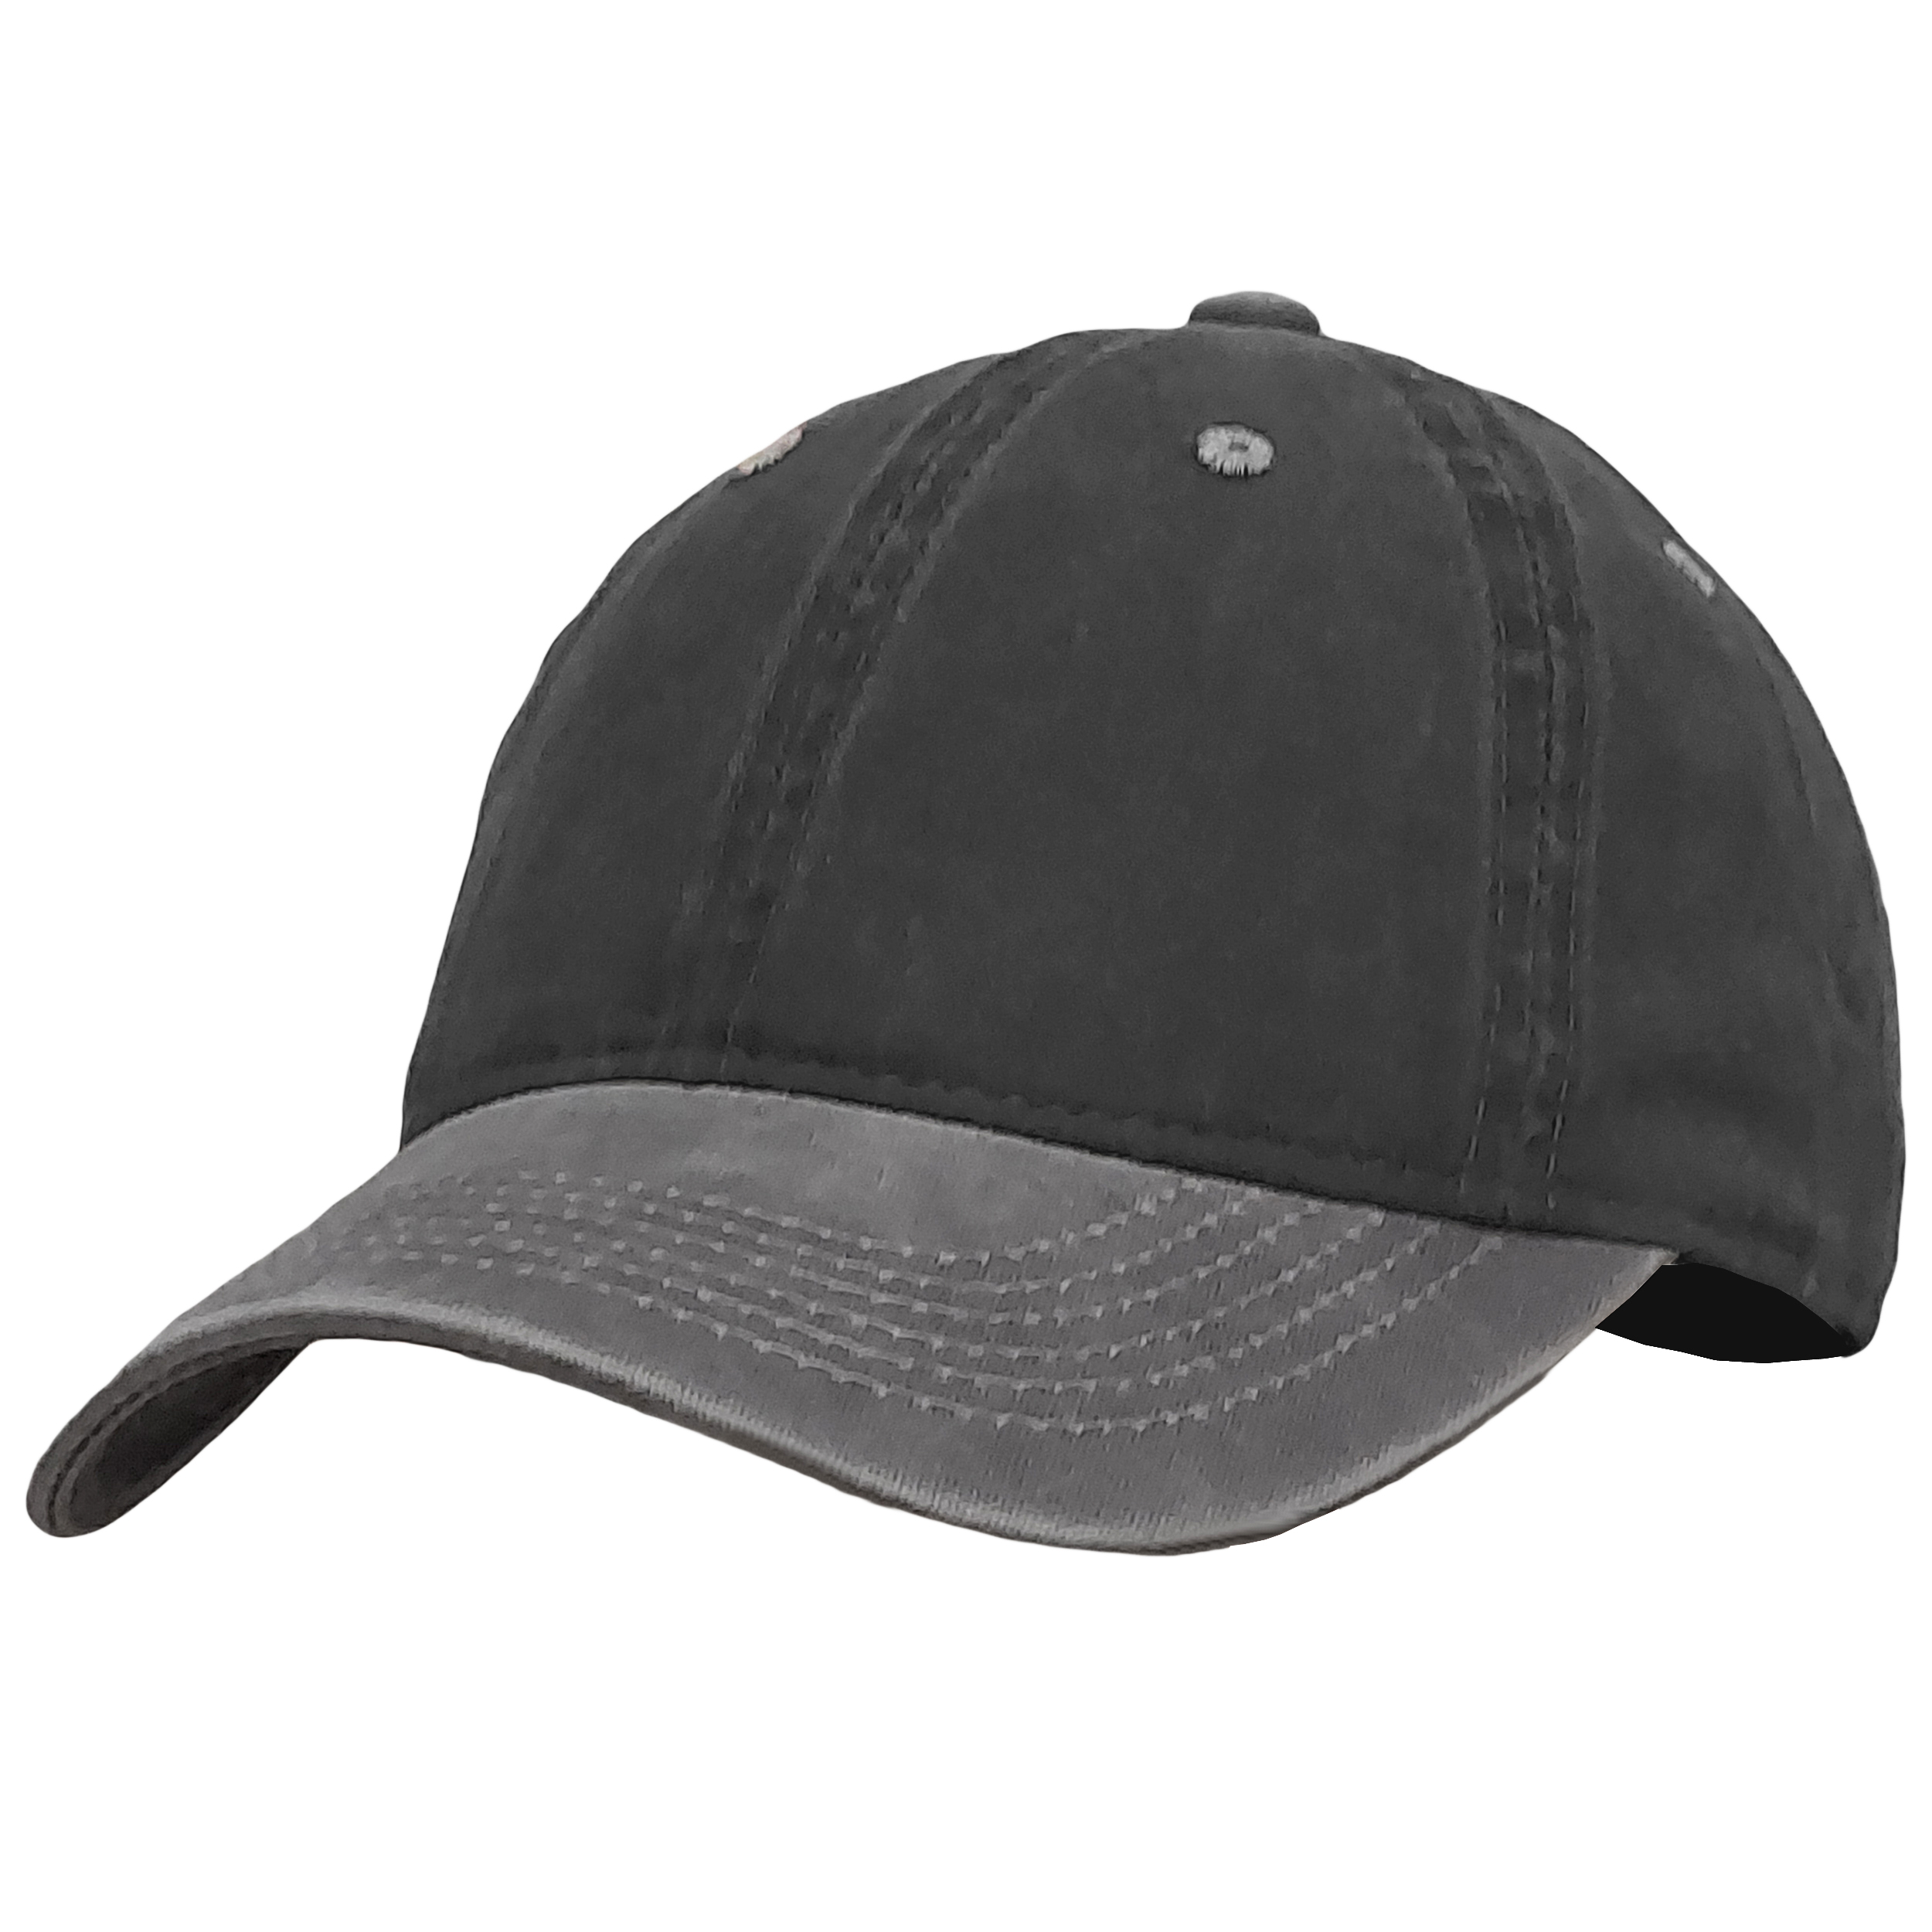 نکته خرید - قیمت روز کلاه کپ مدل سنگشور نرم کد H-78-05 خرید